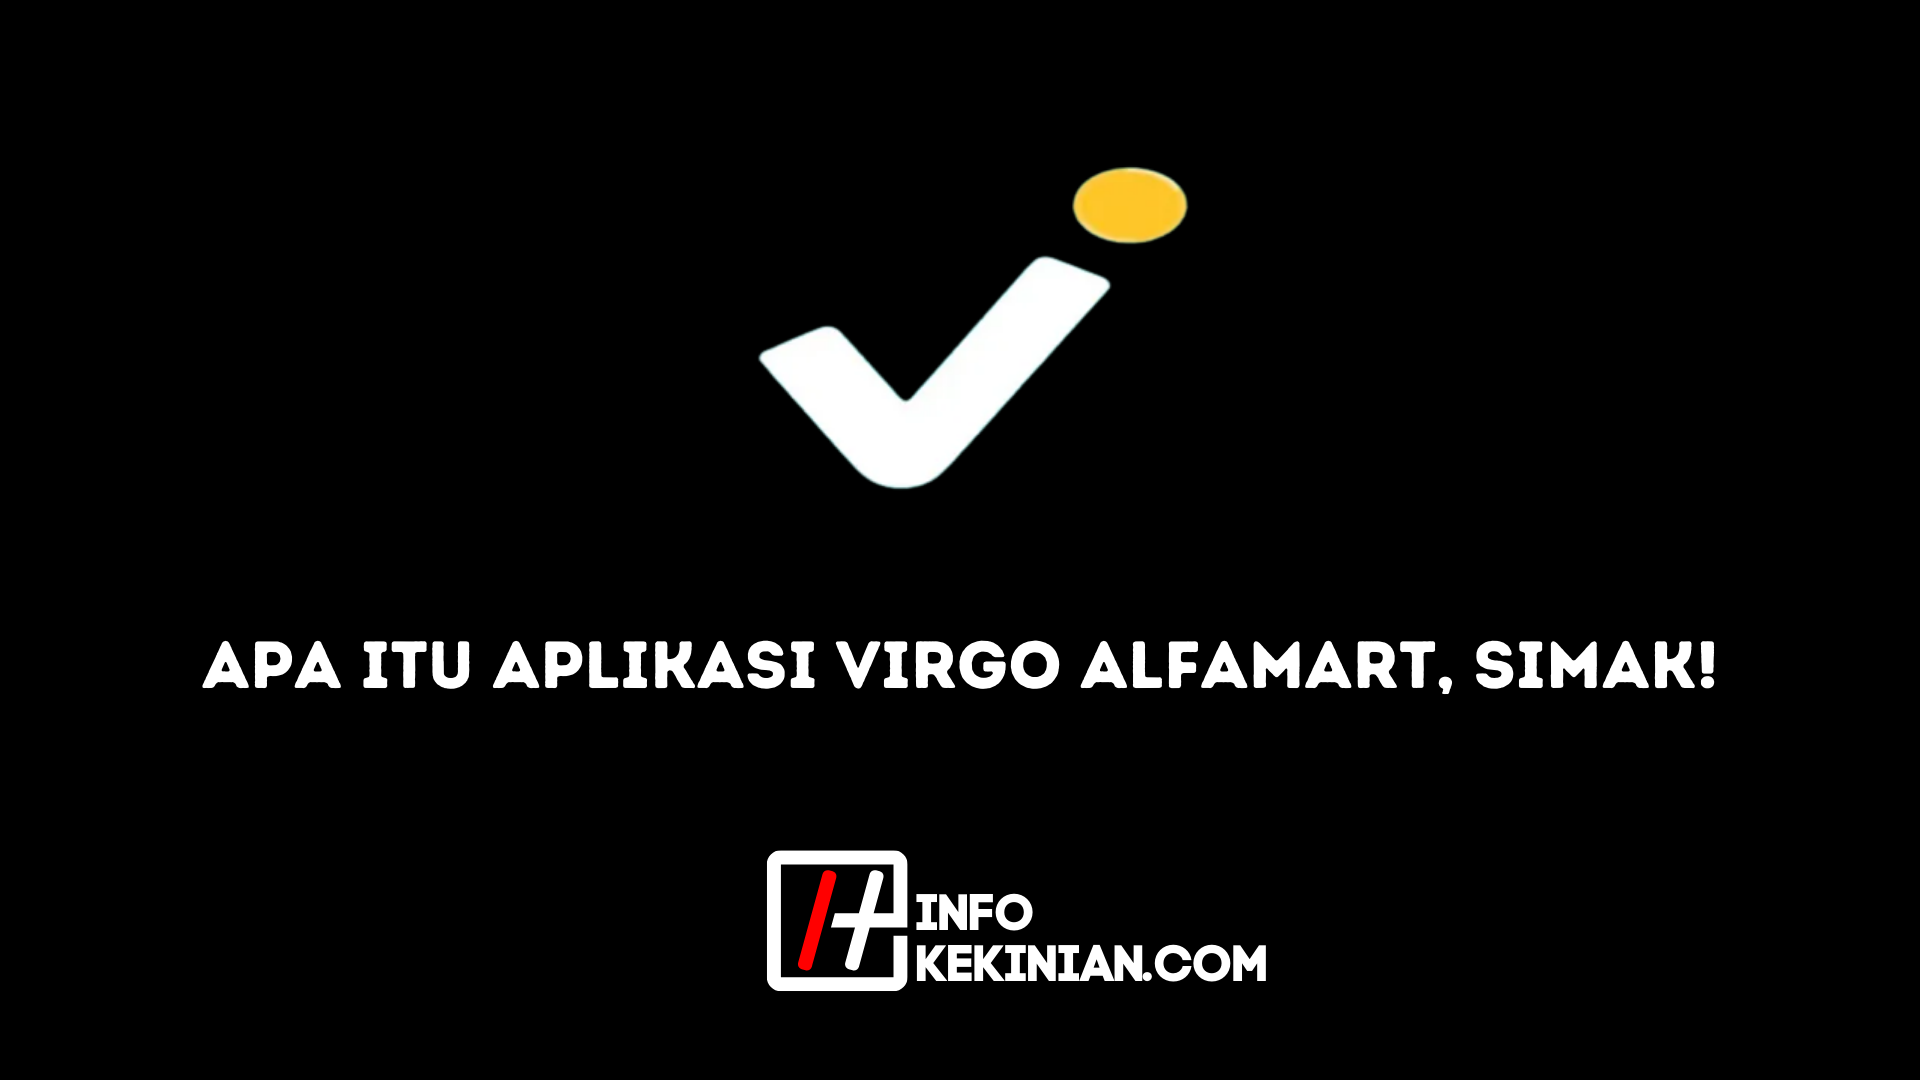 Apa itu Aplikasi Virgo Alfamart, Simak!